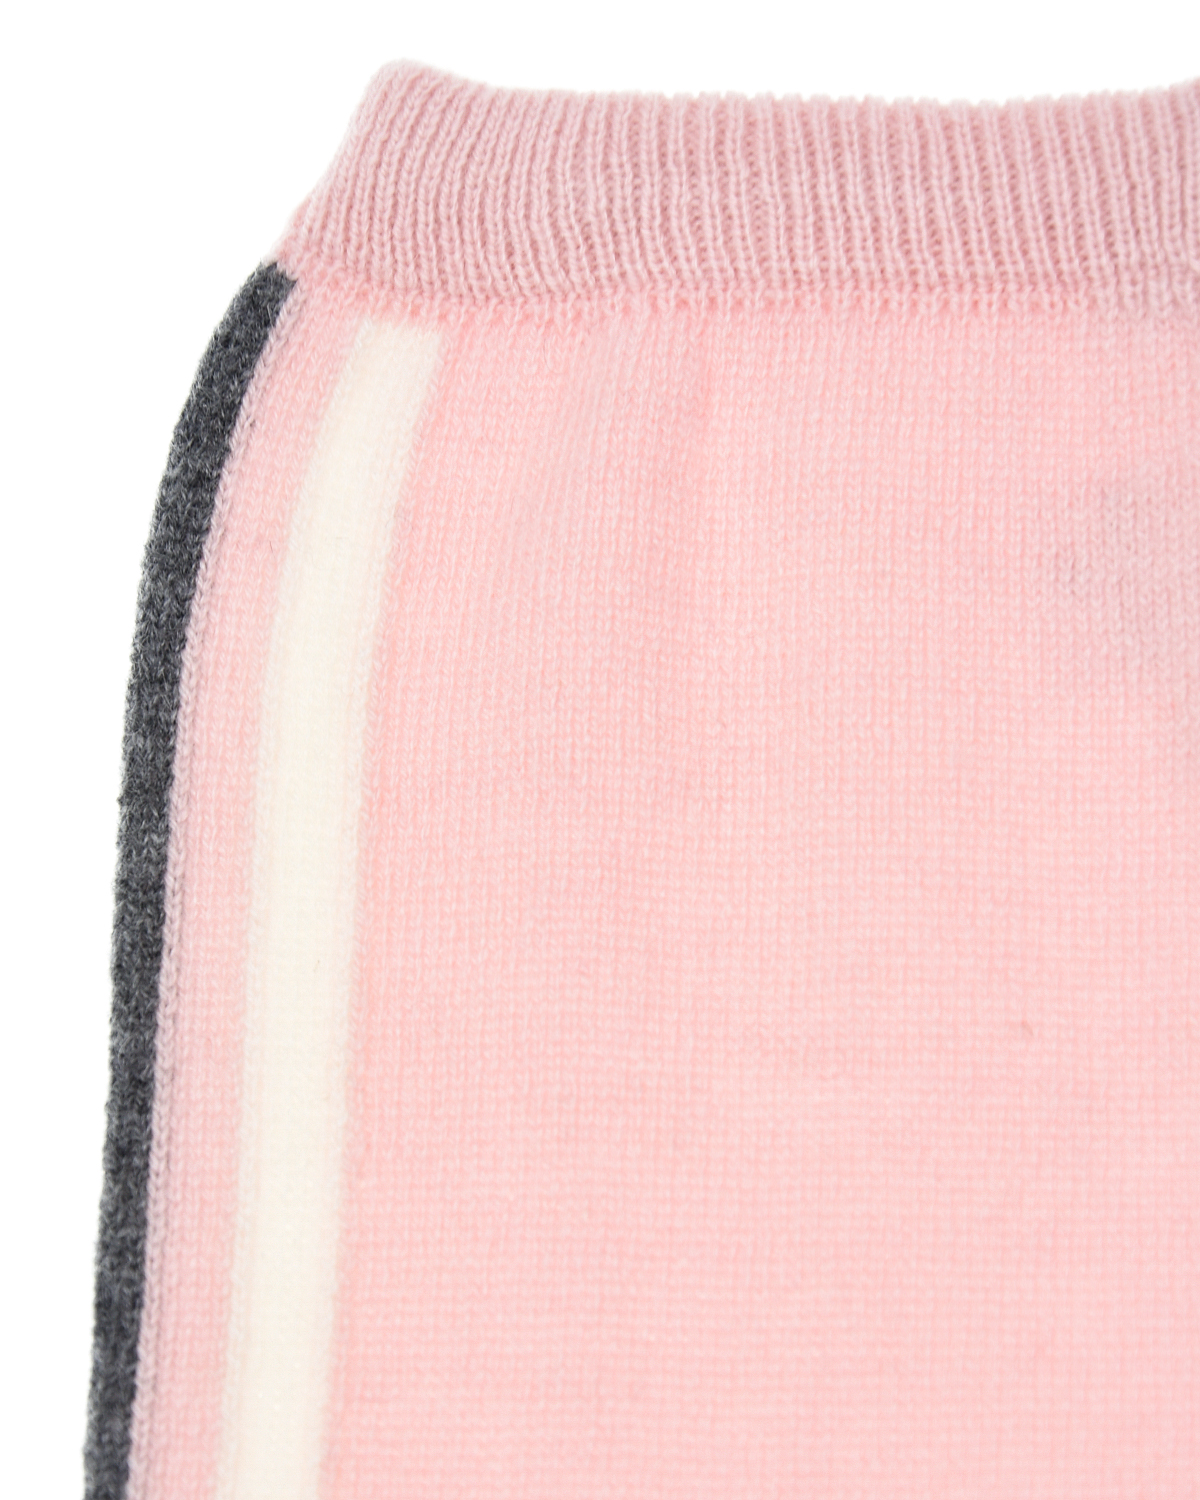 Спортивный костюм из кашемира розового цвета Tomax детский, размер 68 - фото 7